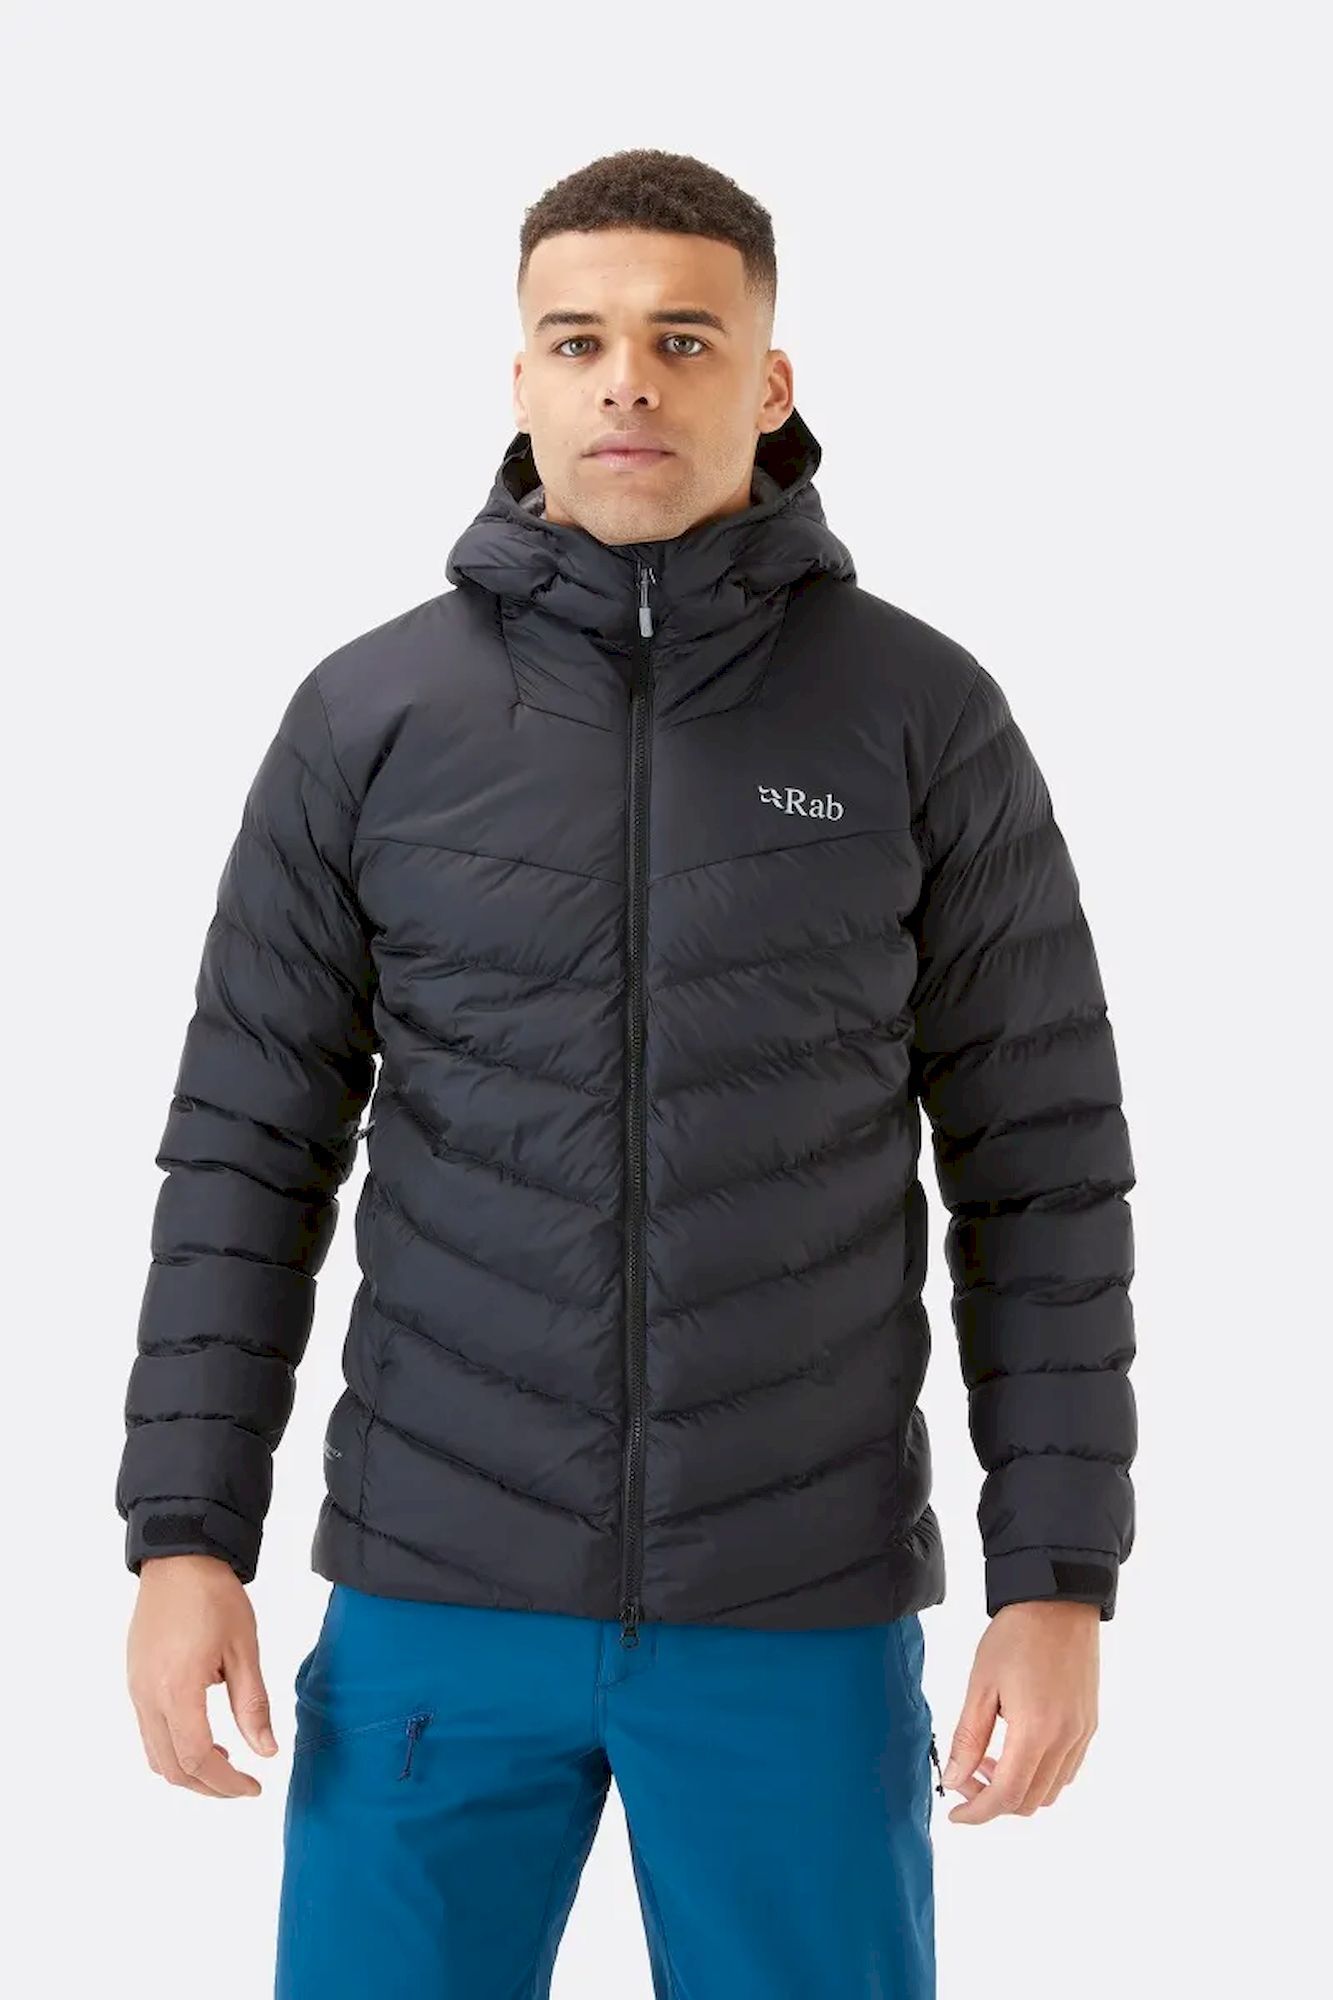 Rab Nebula Pro Jacket - Synthetic jacket - Men's